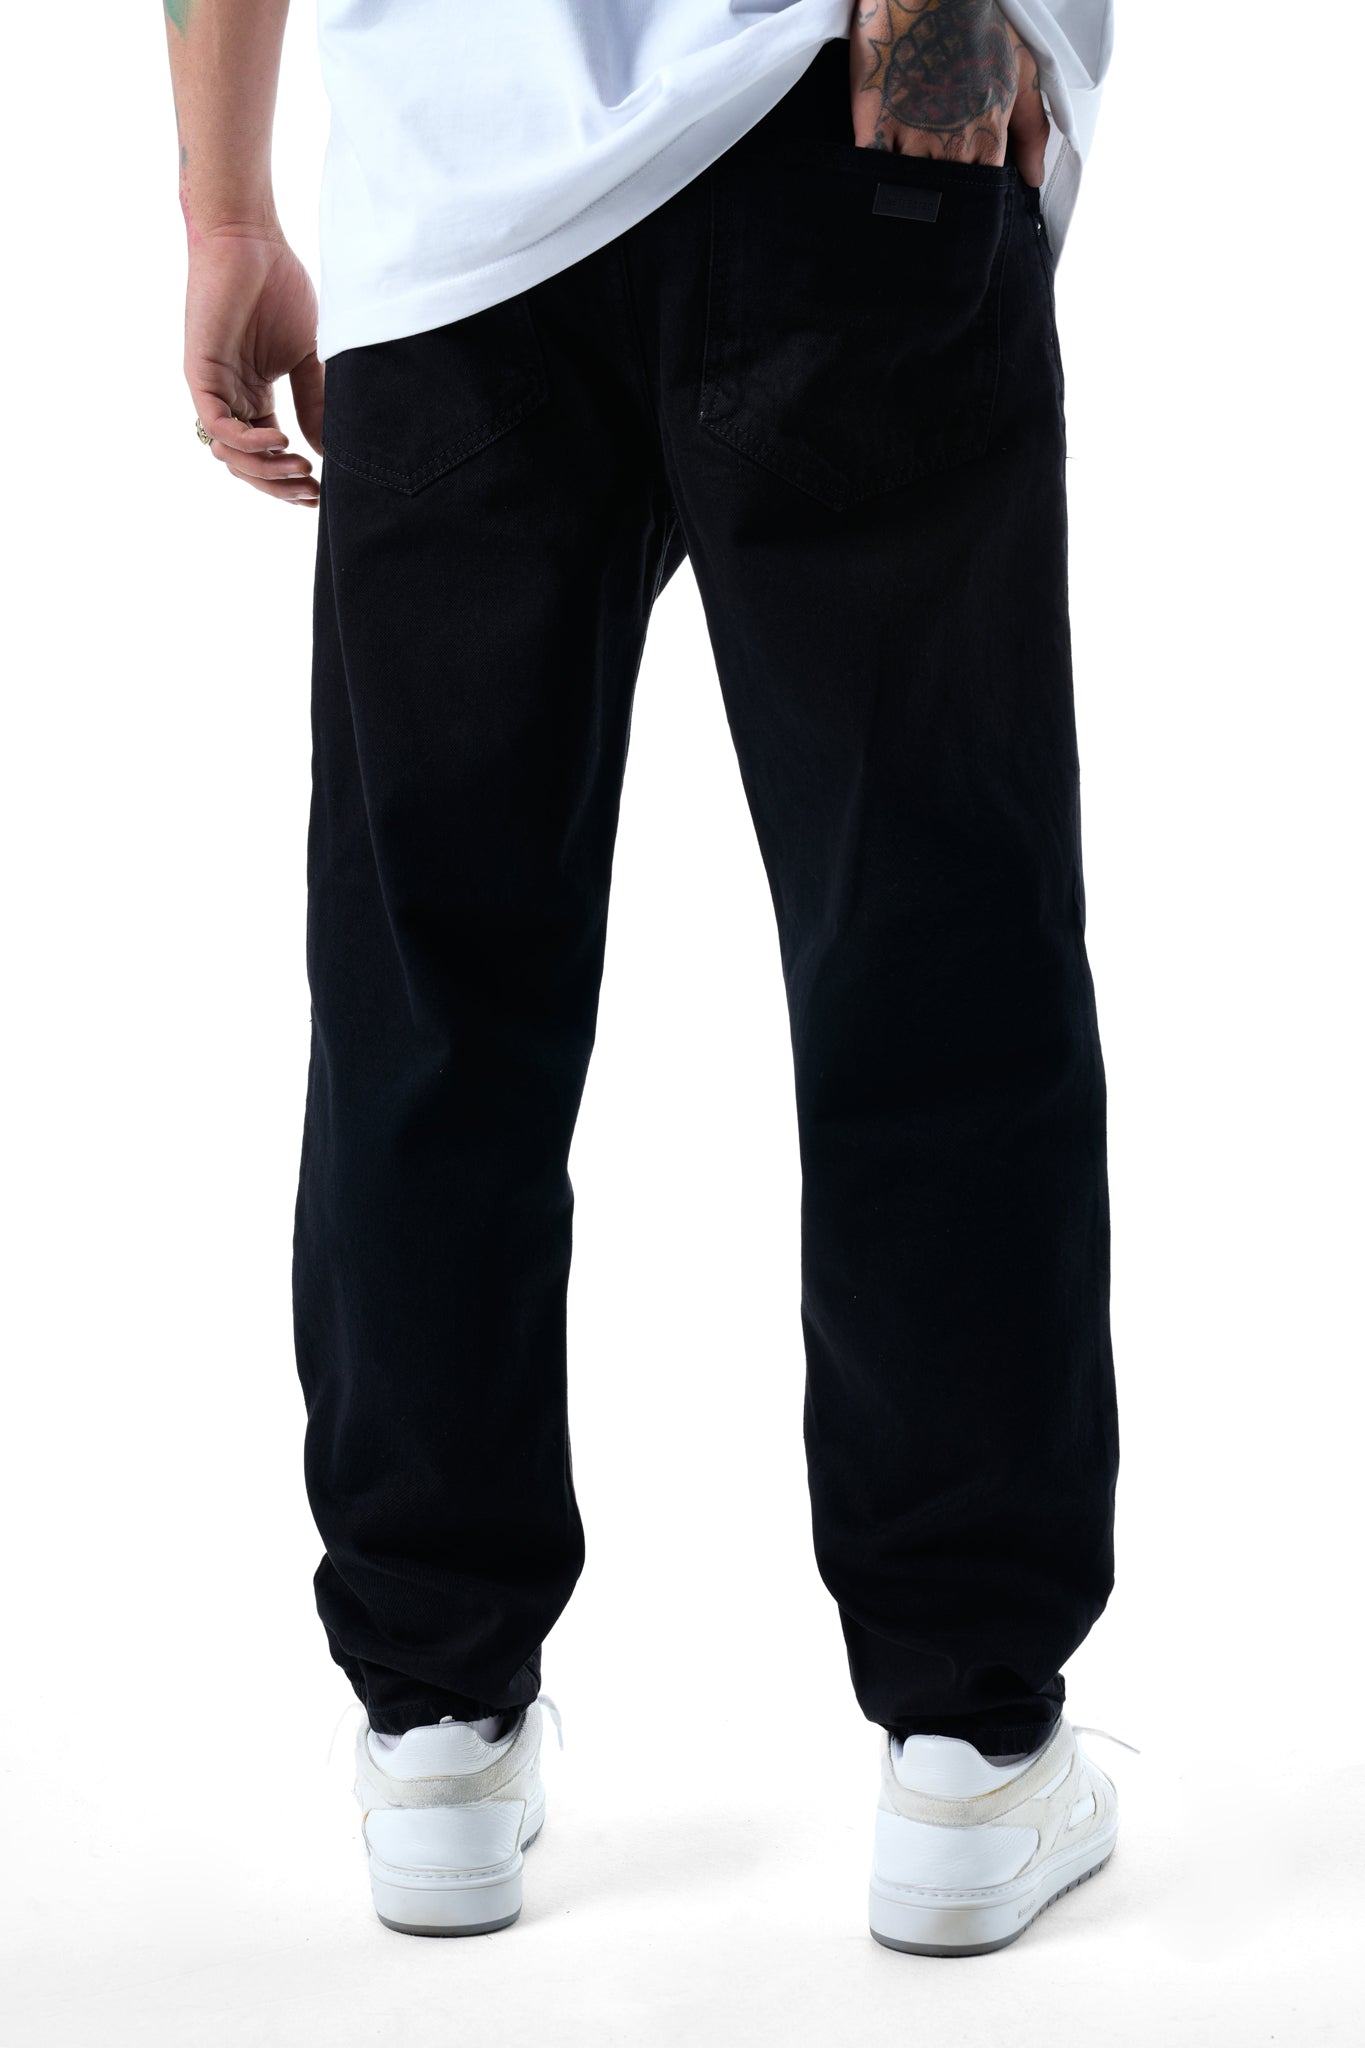 Premium Baggy Jet Black Jeans - UNEFFECTED STUDIOS® - JEANS - UNEFFECTED STUDIOS®